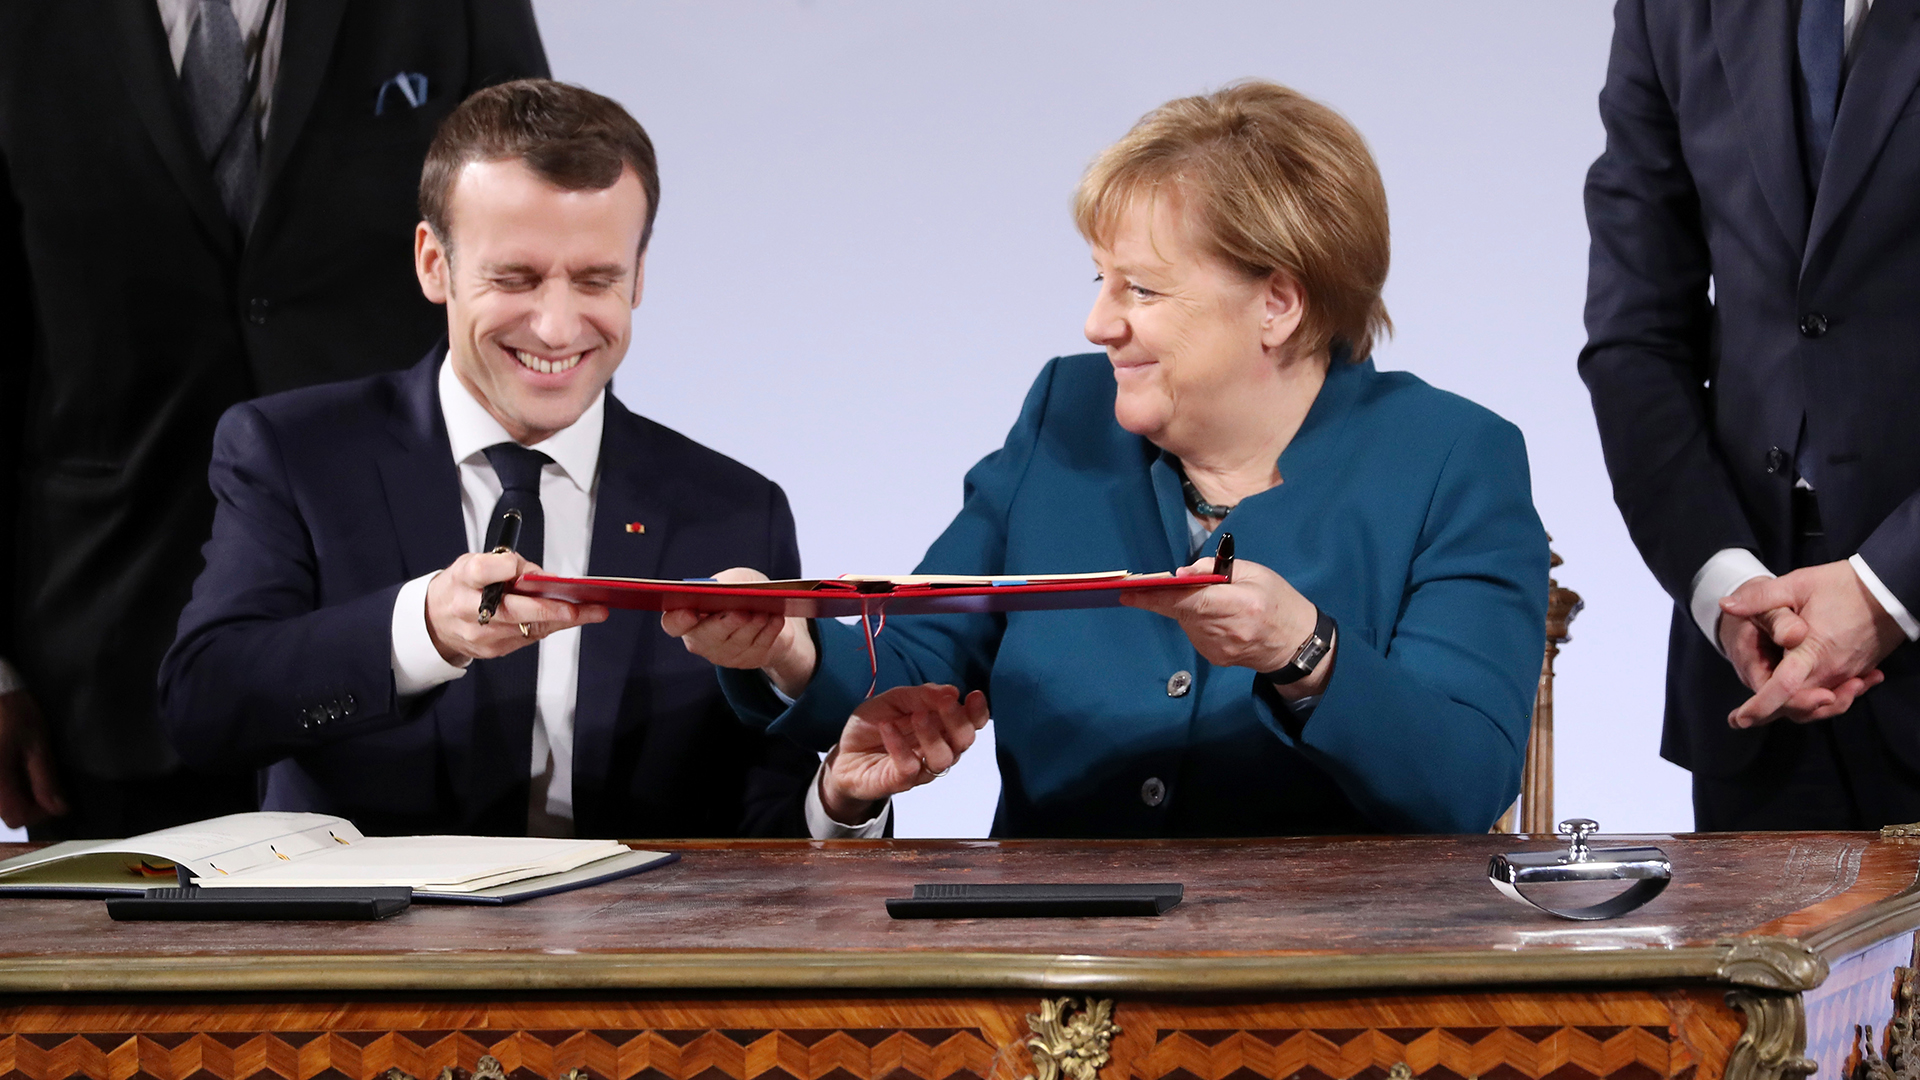 Emmanuel Macron und Angela Merkel unterzeichnen Aachener Vertrag | Bildquelle: FRIEDEMANN VOGEL/EPA-EFE/REX